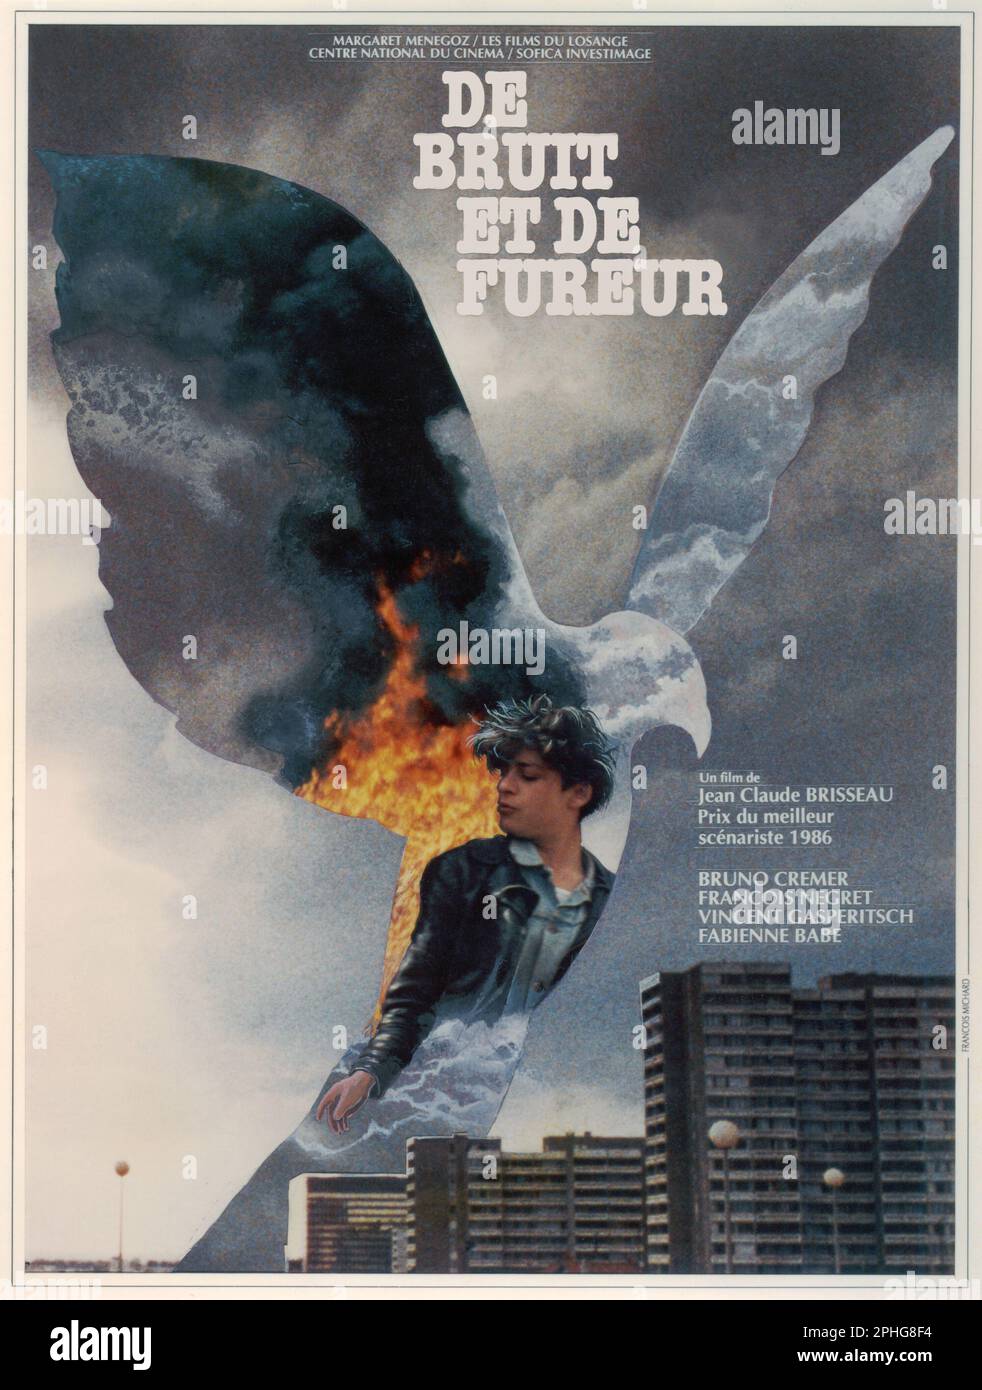 SOUND AND FURY (1988) -Original title: DE BRUIT ET DE FUREUR-, directed by JEAN-CLAUDE BRISSEAU. Credit: Investimage / Les Films du Losange / Album Stock Photo